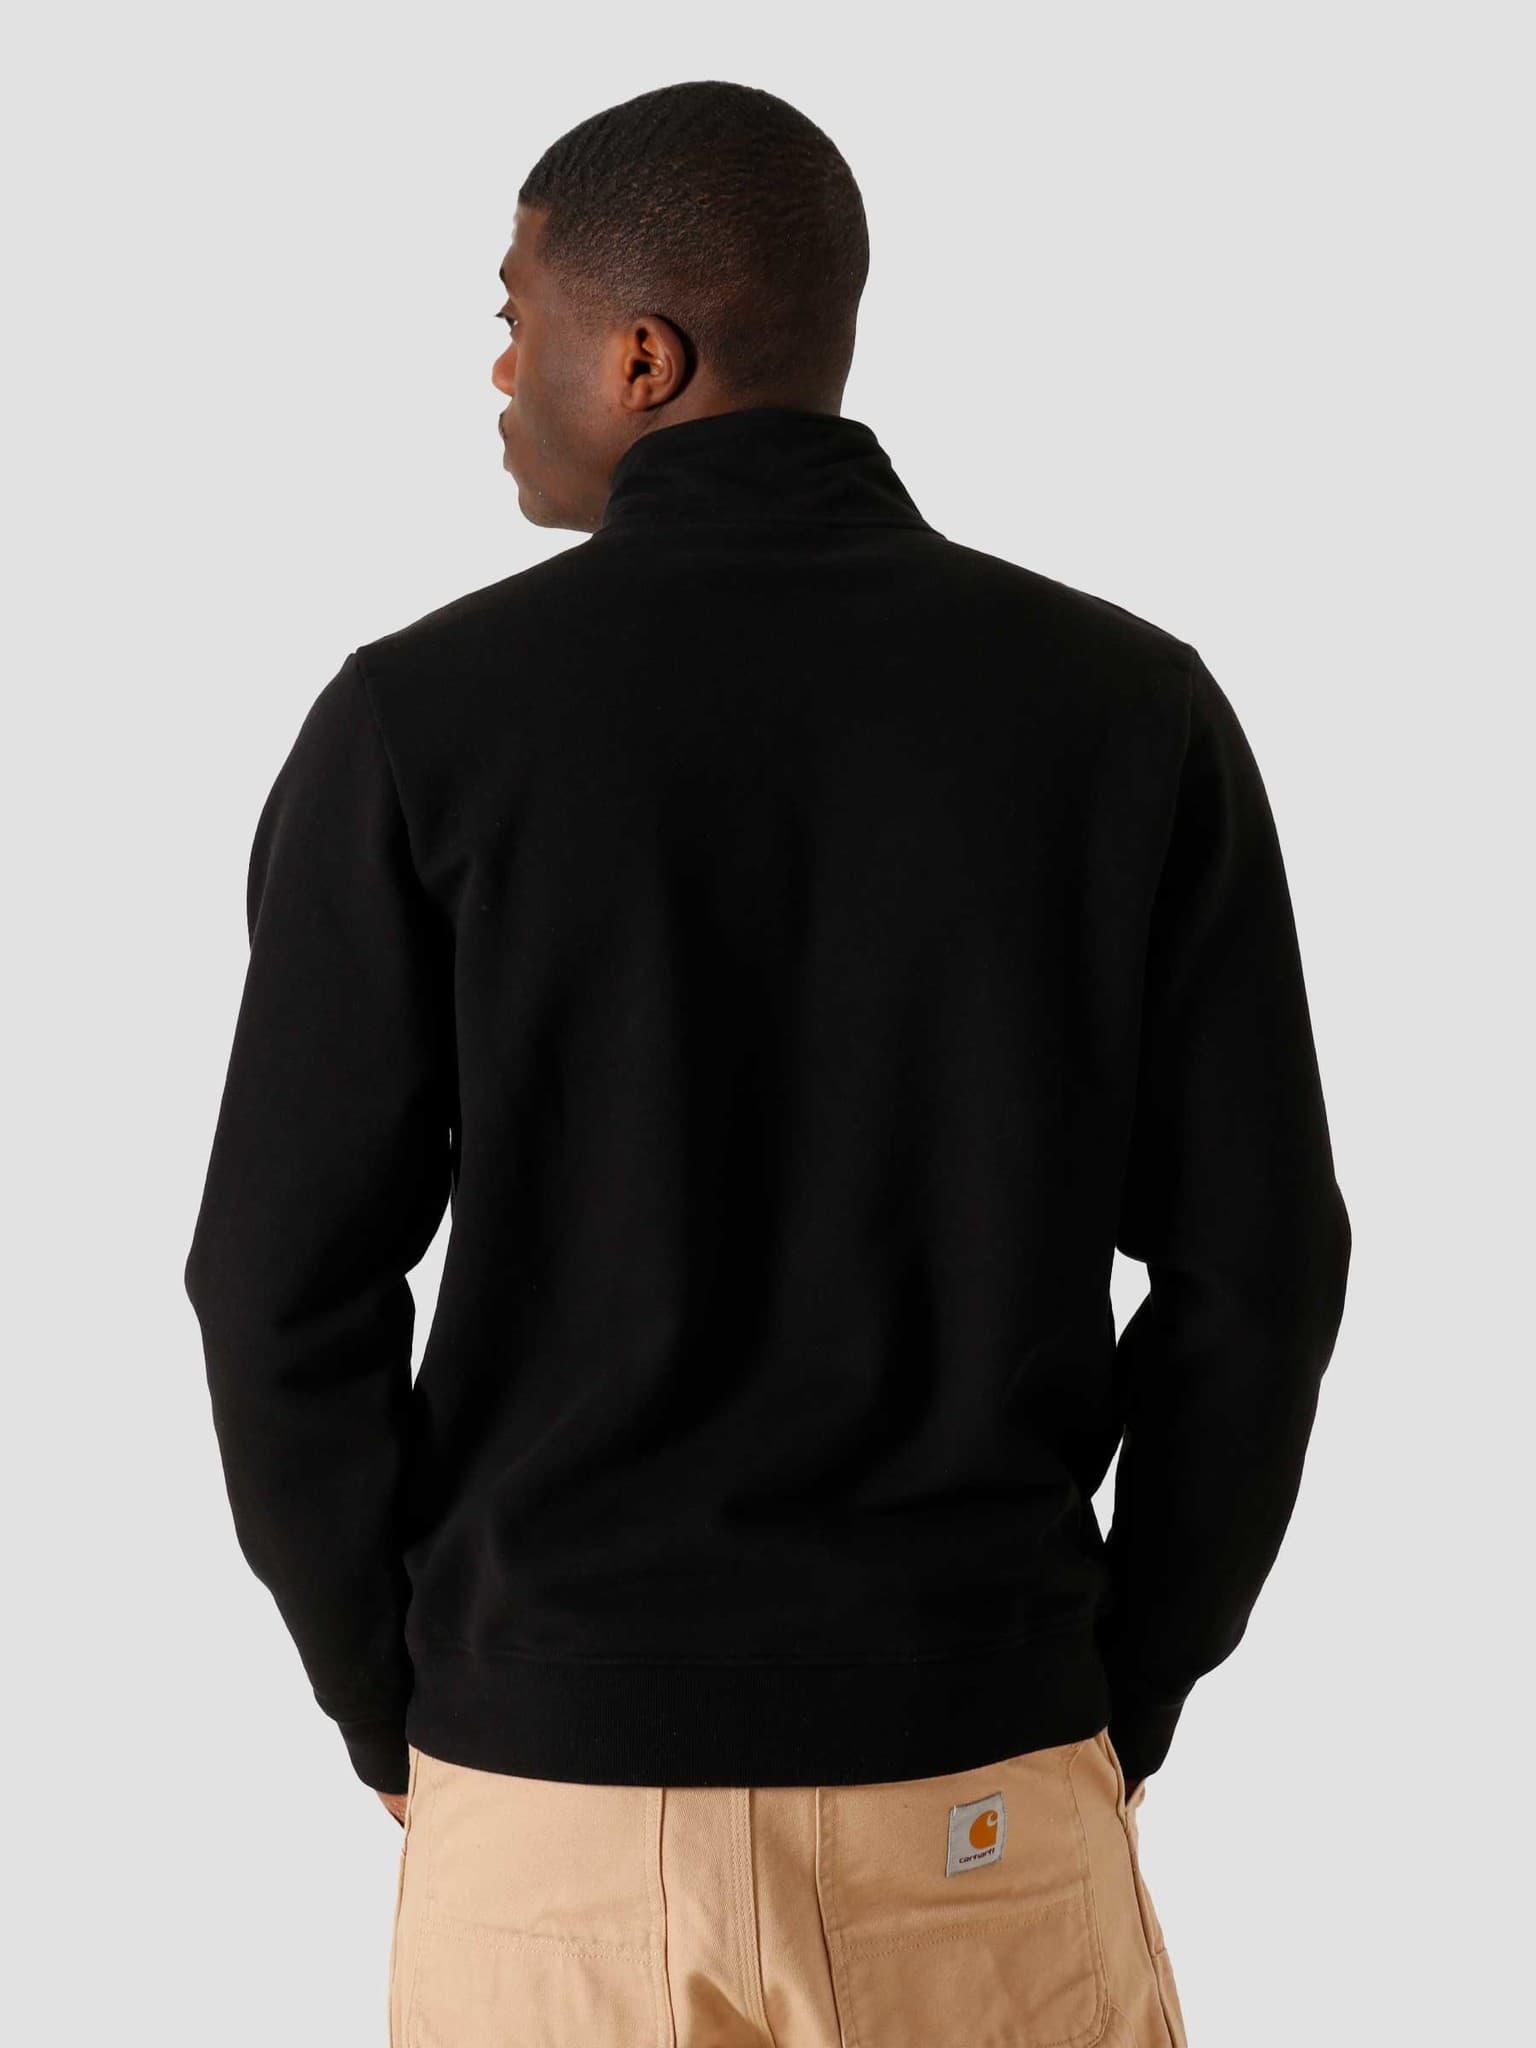 Snaked Zip Sweatshirt Black 45050